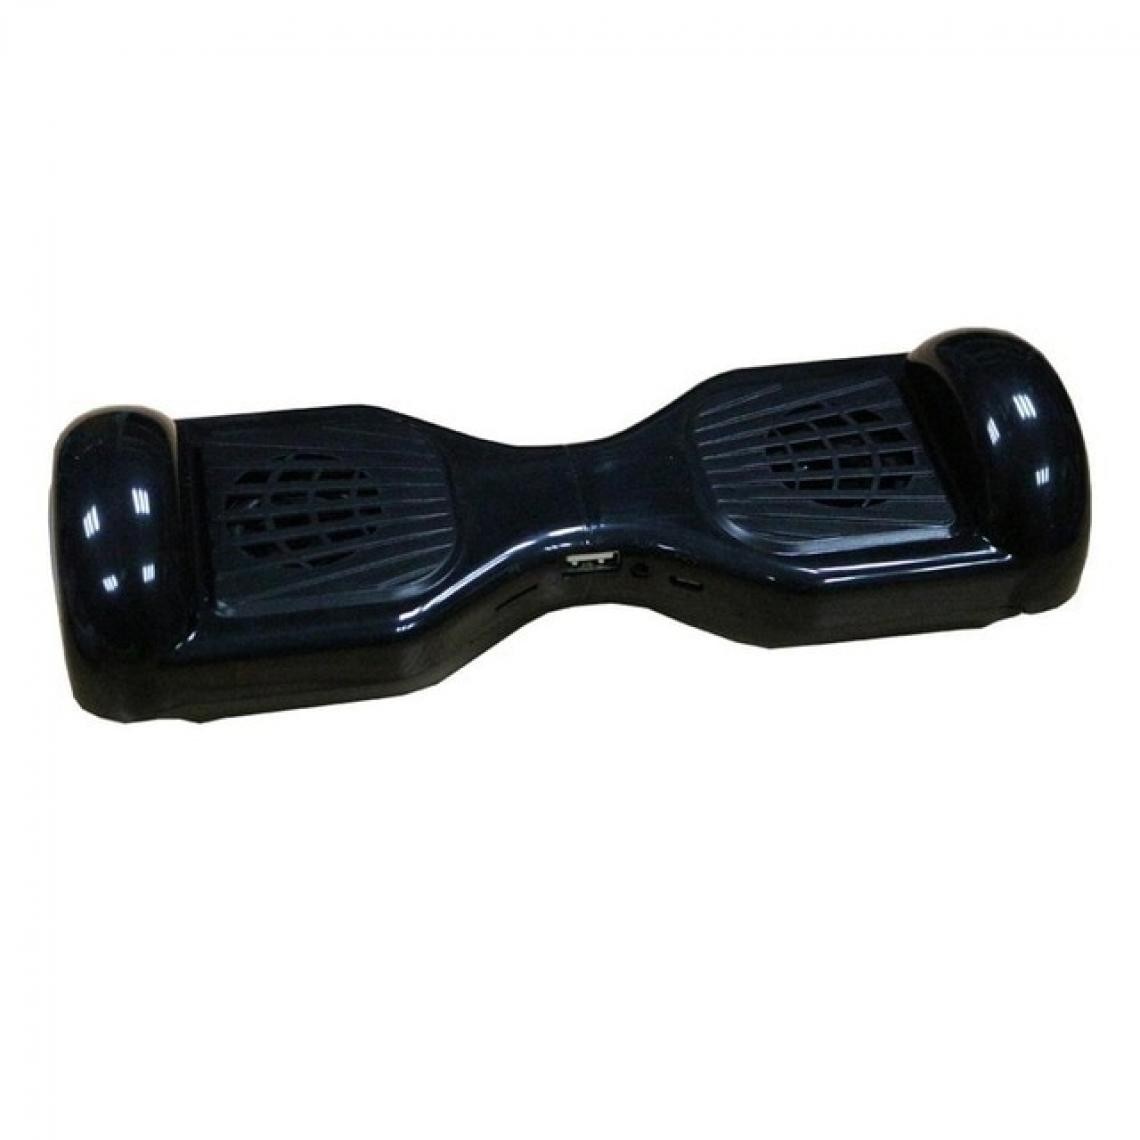 Universal - Haut-parleur Bluetooth Balance Car Torsion Car Subwoofer Wireless Outdoor Portable Mini Card Cadeau Petit Lecteur MP3 Stéréo | Haut-parleur Portable (Noir) - Hauts-parleurs